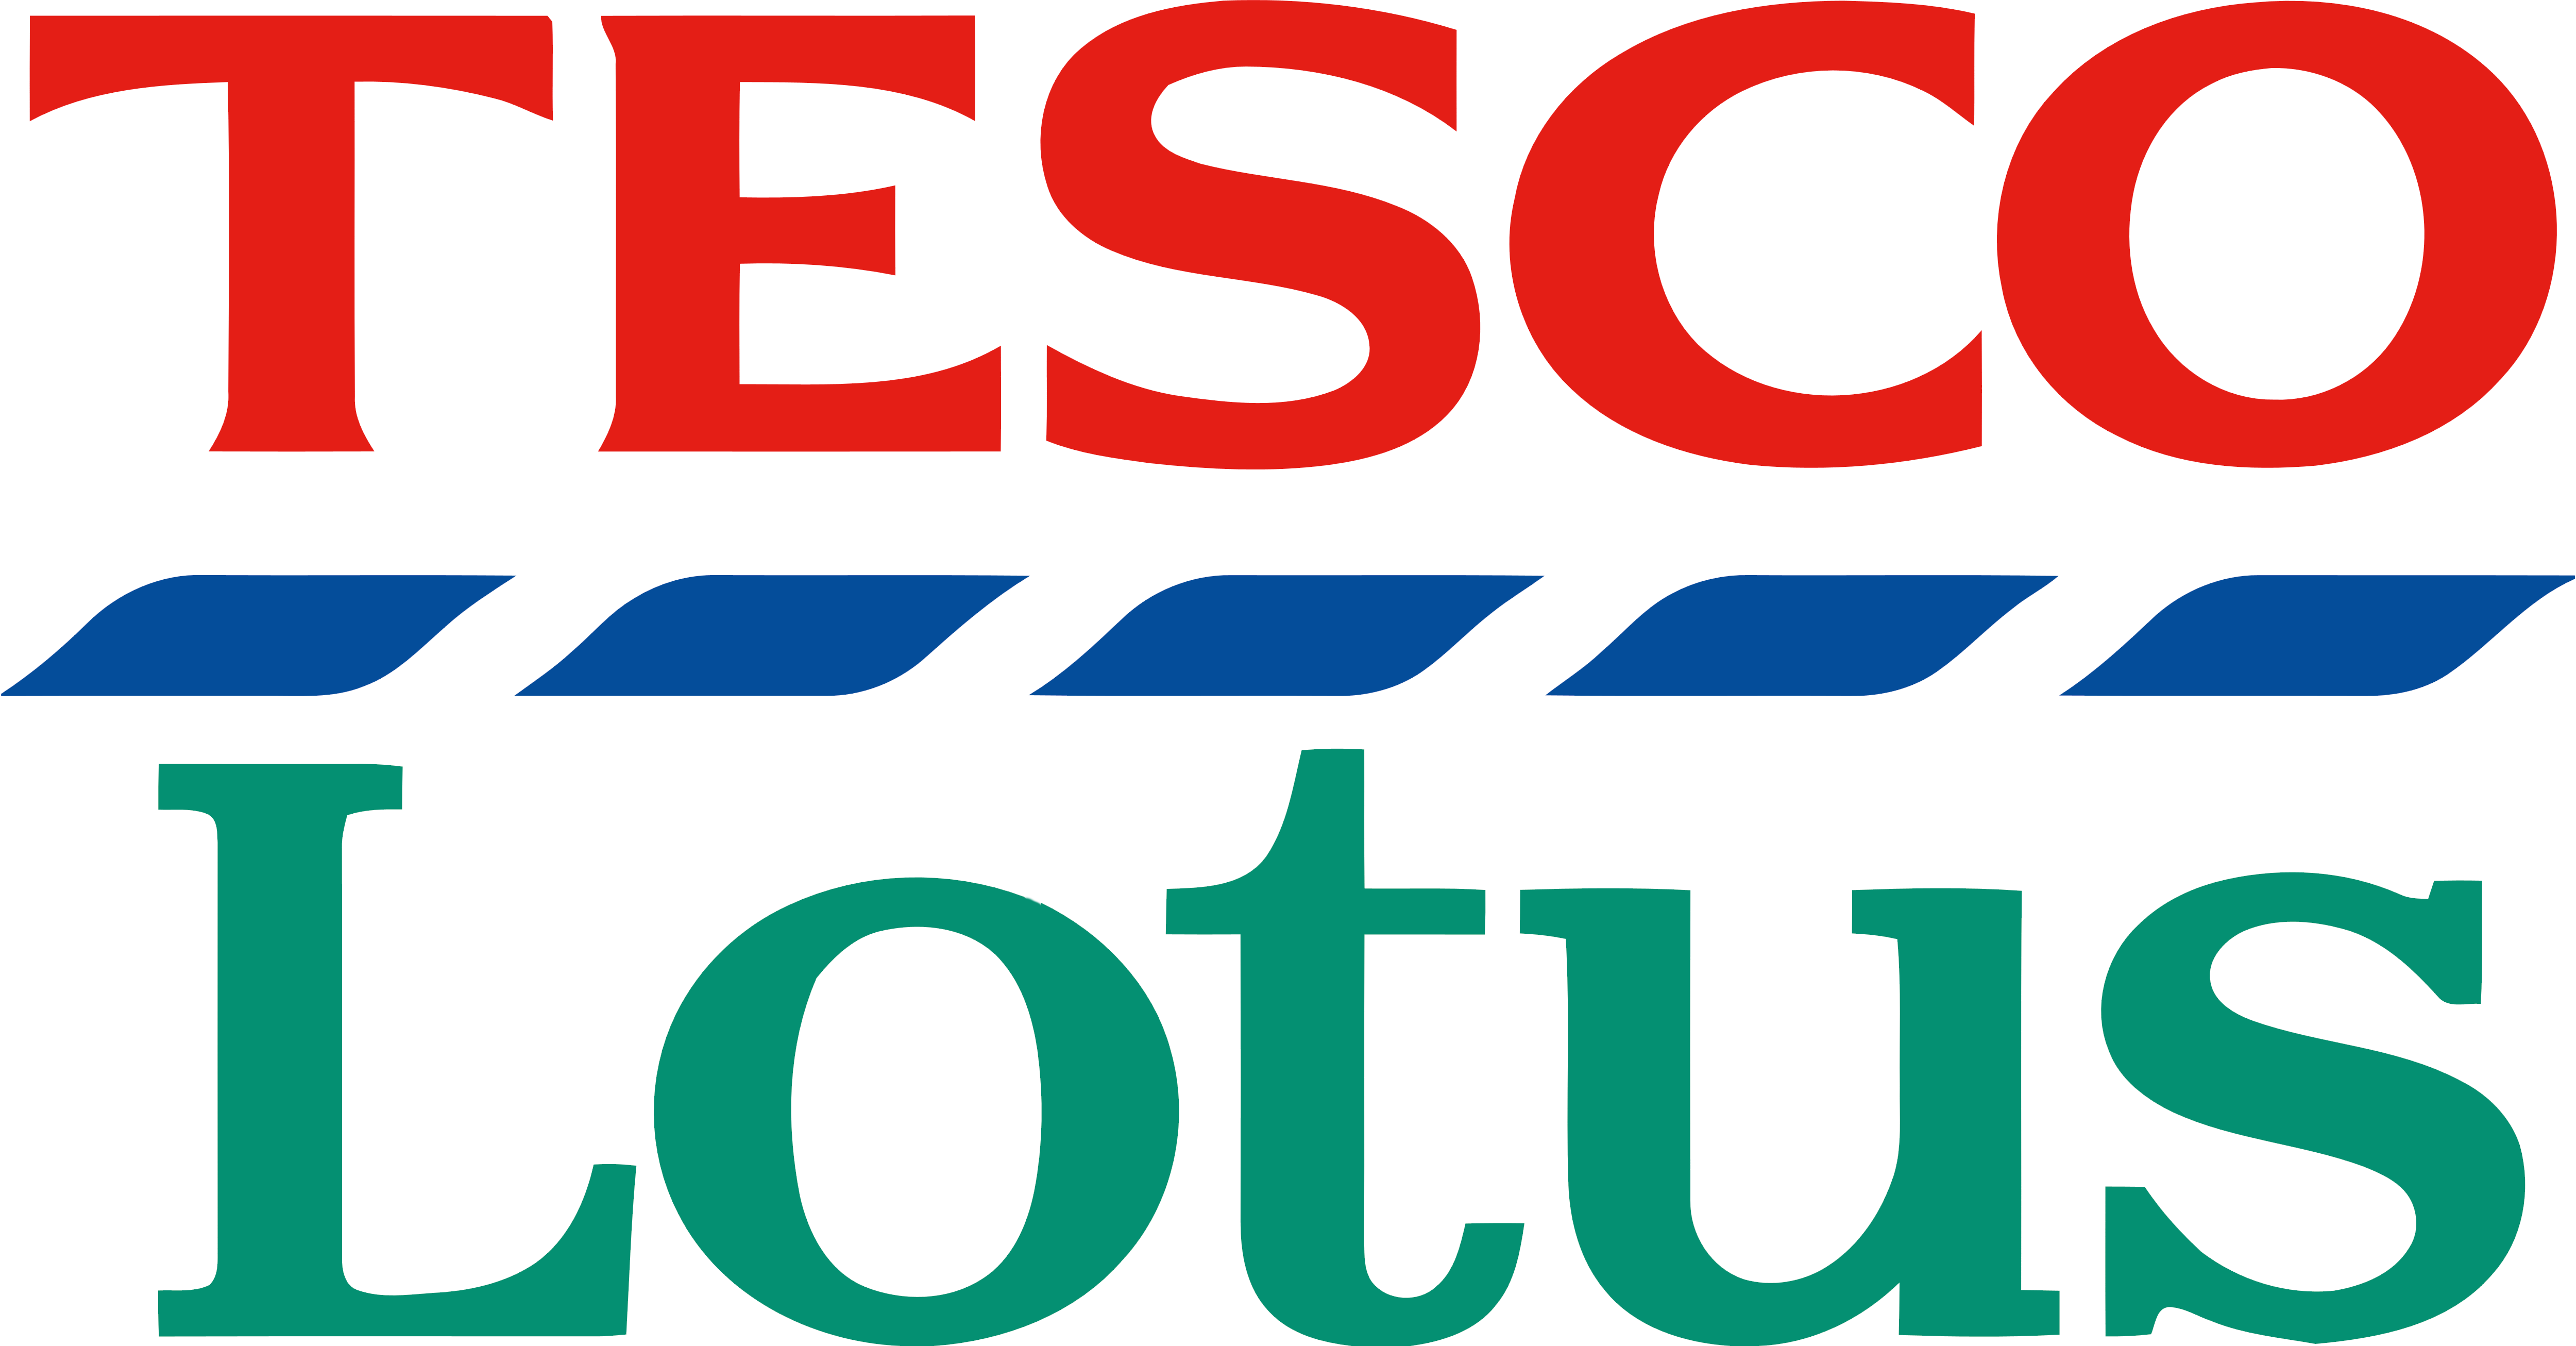 Tesco_Lotus_logo